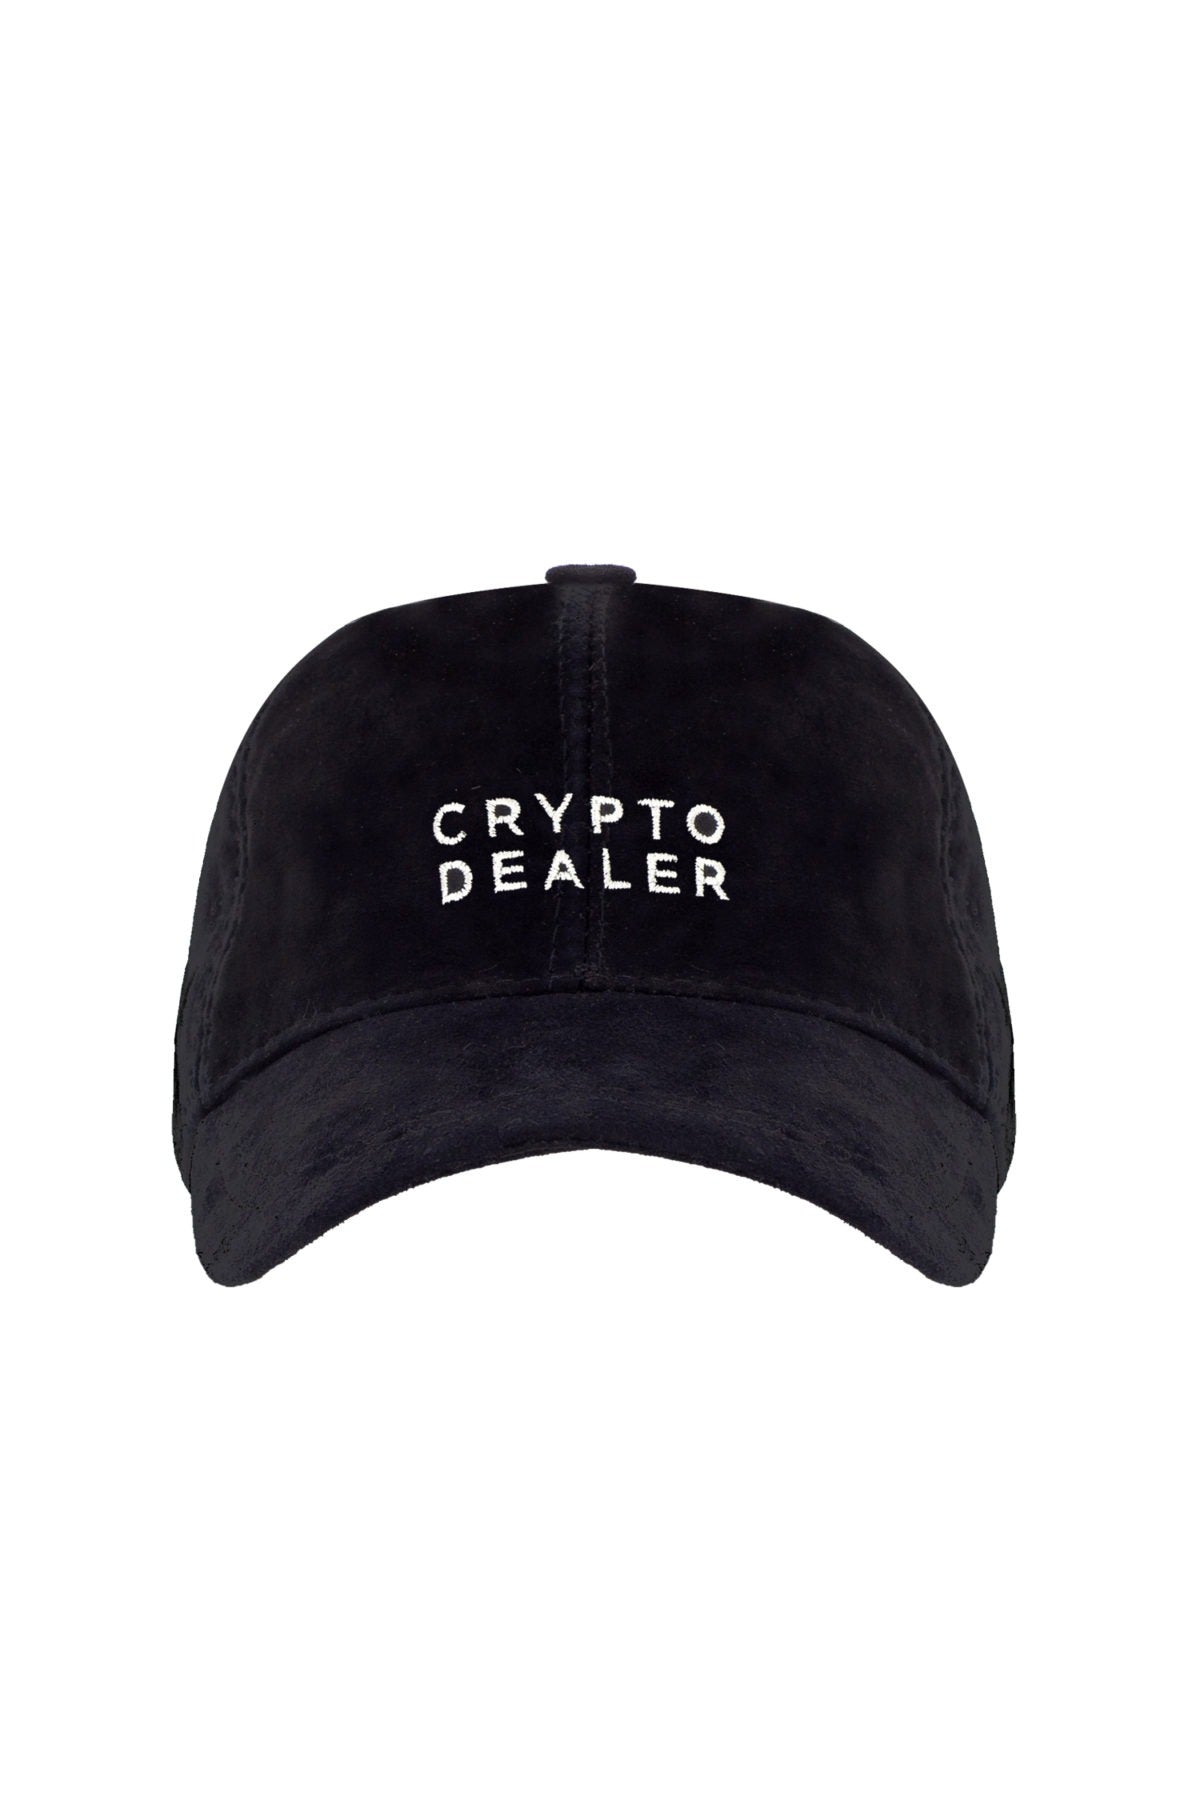 Cyrpto Dealer -  Black